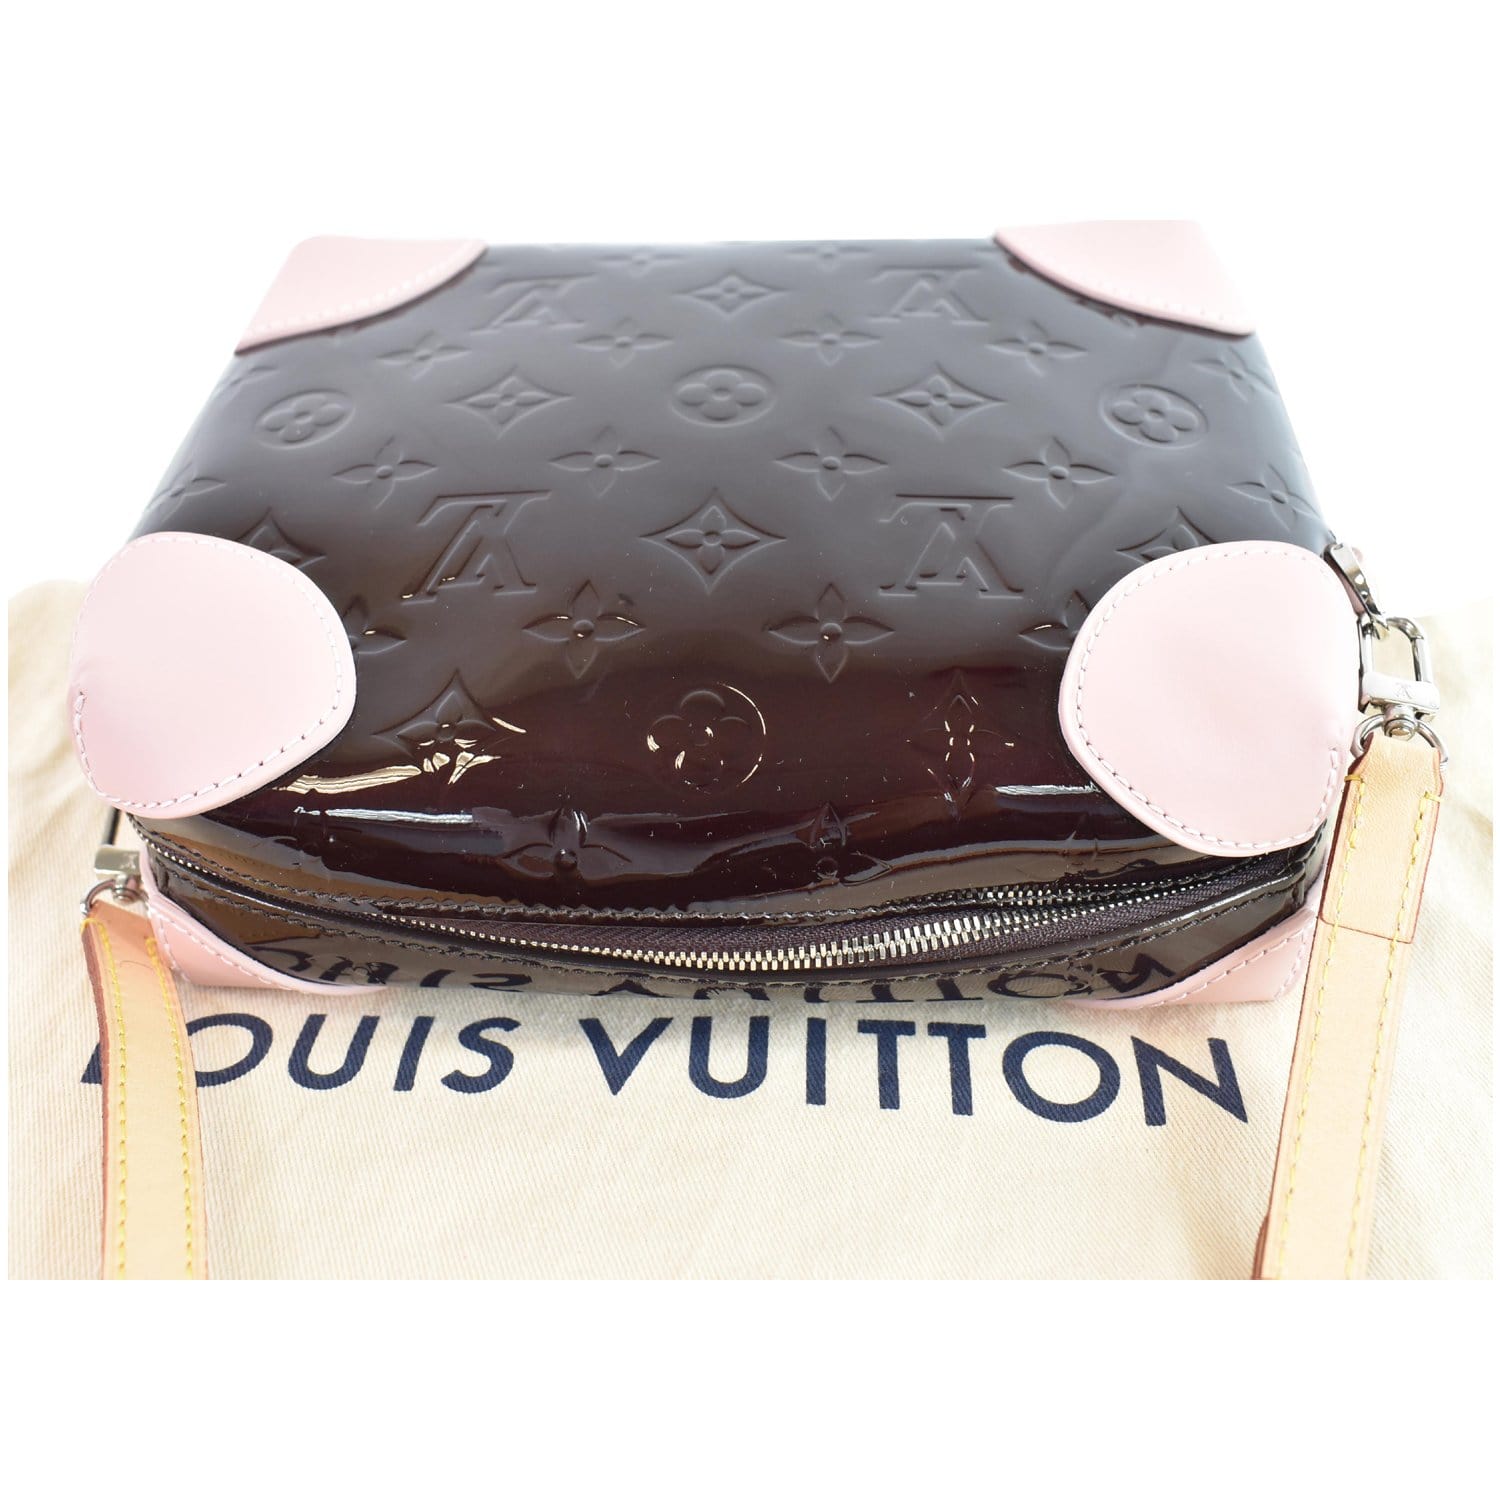 Handbags Louis Vuitton Louis Vuitton Amarante Monogram Vernis Vermont Avenue Clutch Bag.